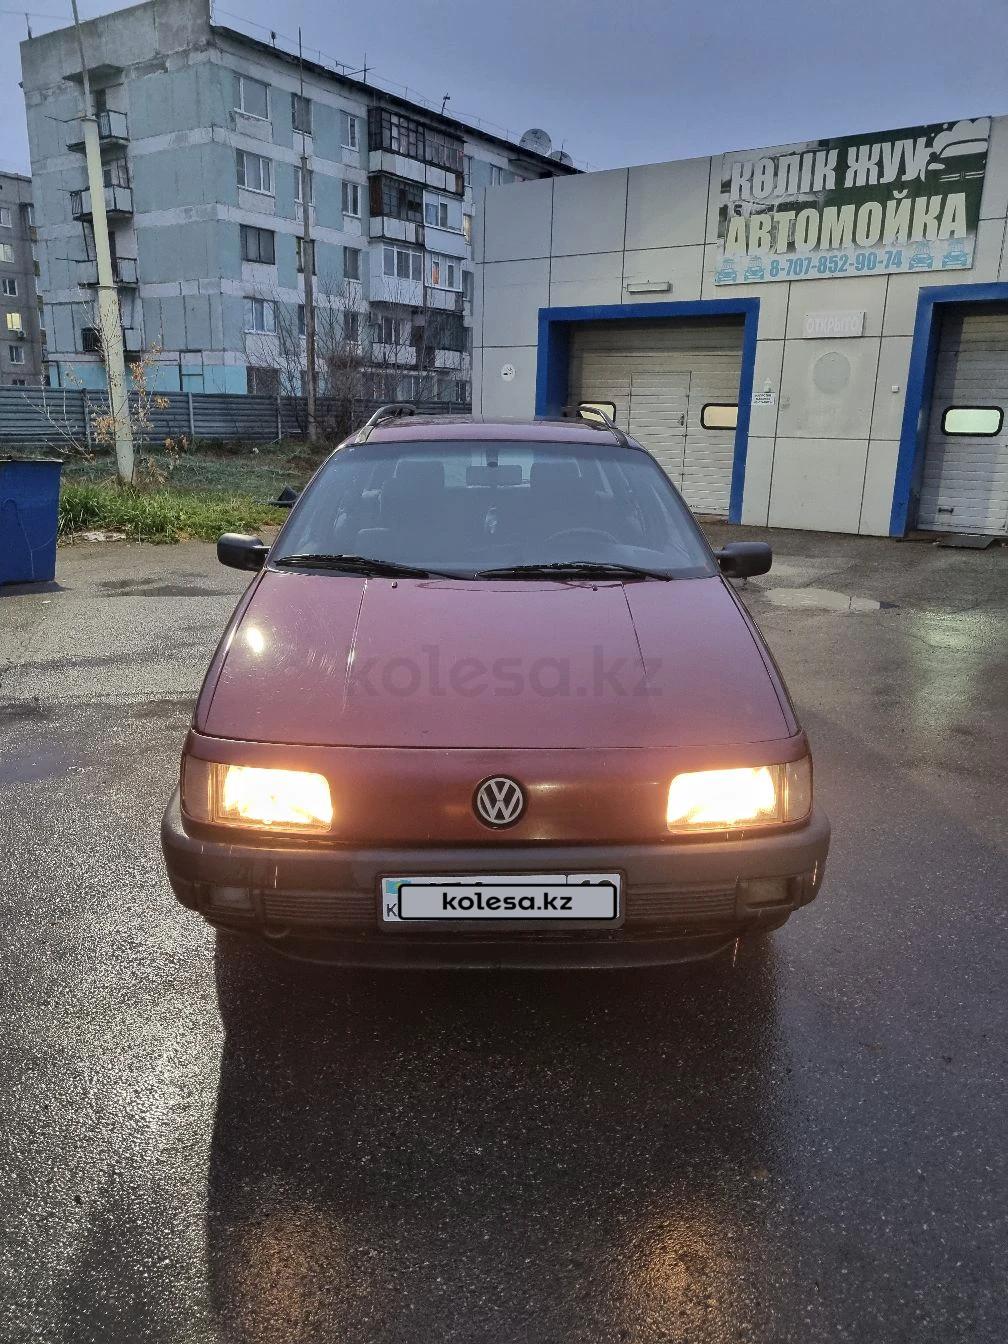 Volkswagen Passat 1993 г.